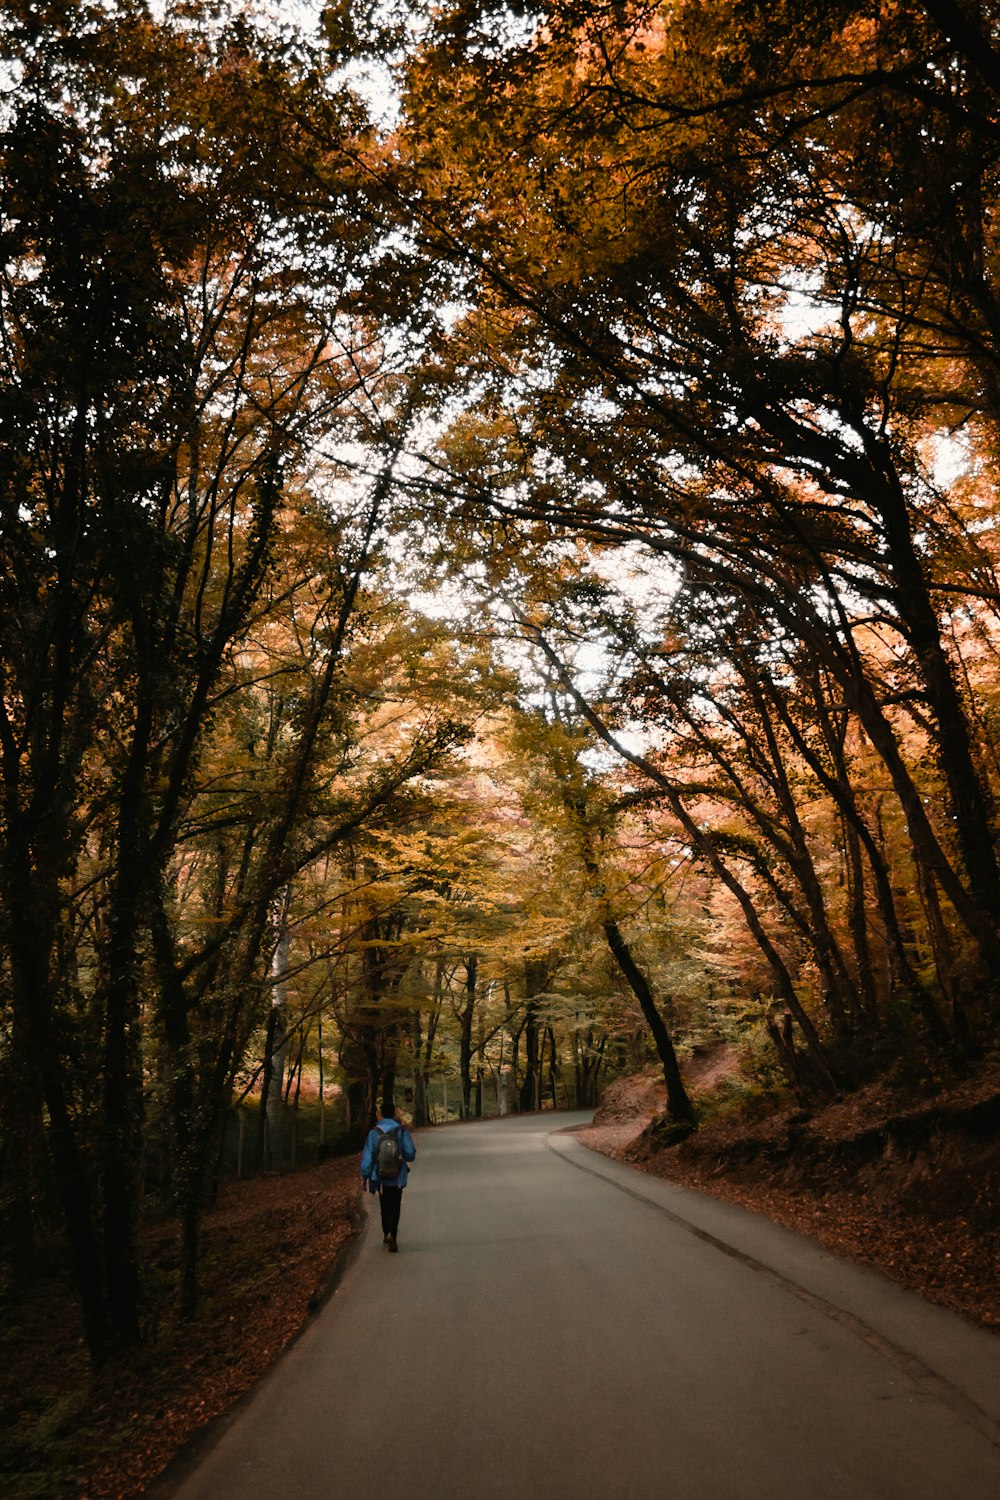 man walking on road between trees